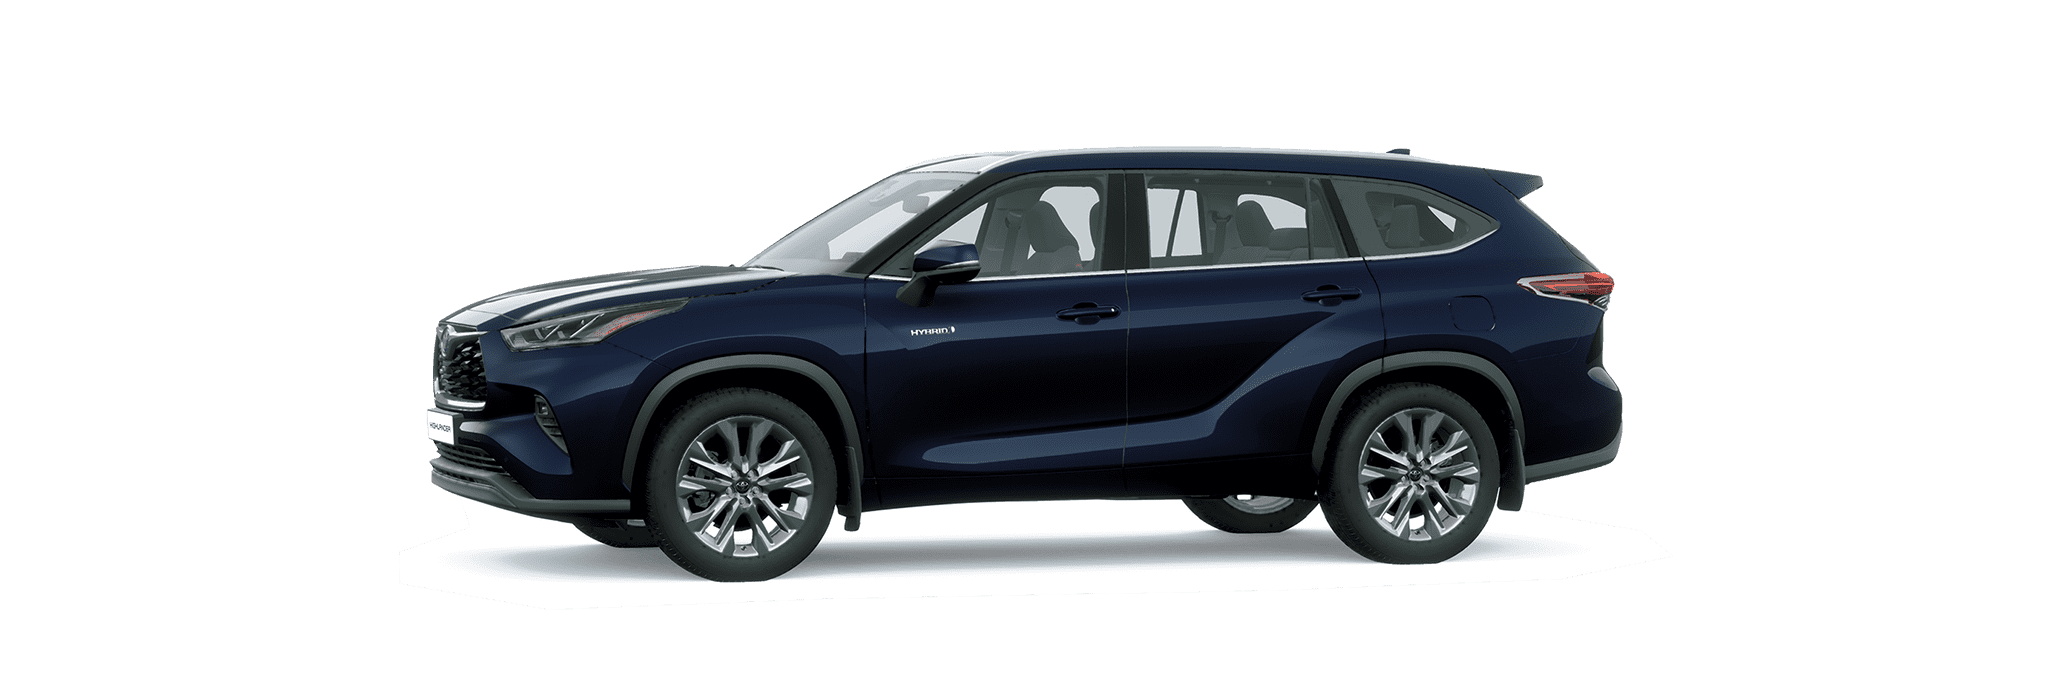 قائمة أسعار سيارات «تويوتا SUV» في السعودية موديل 2022 28